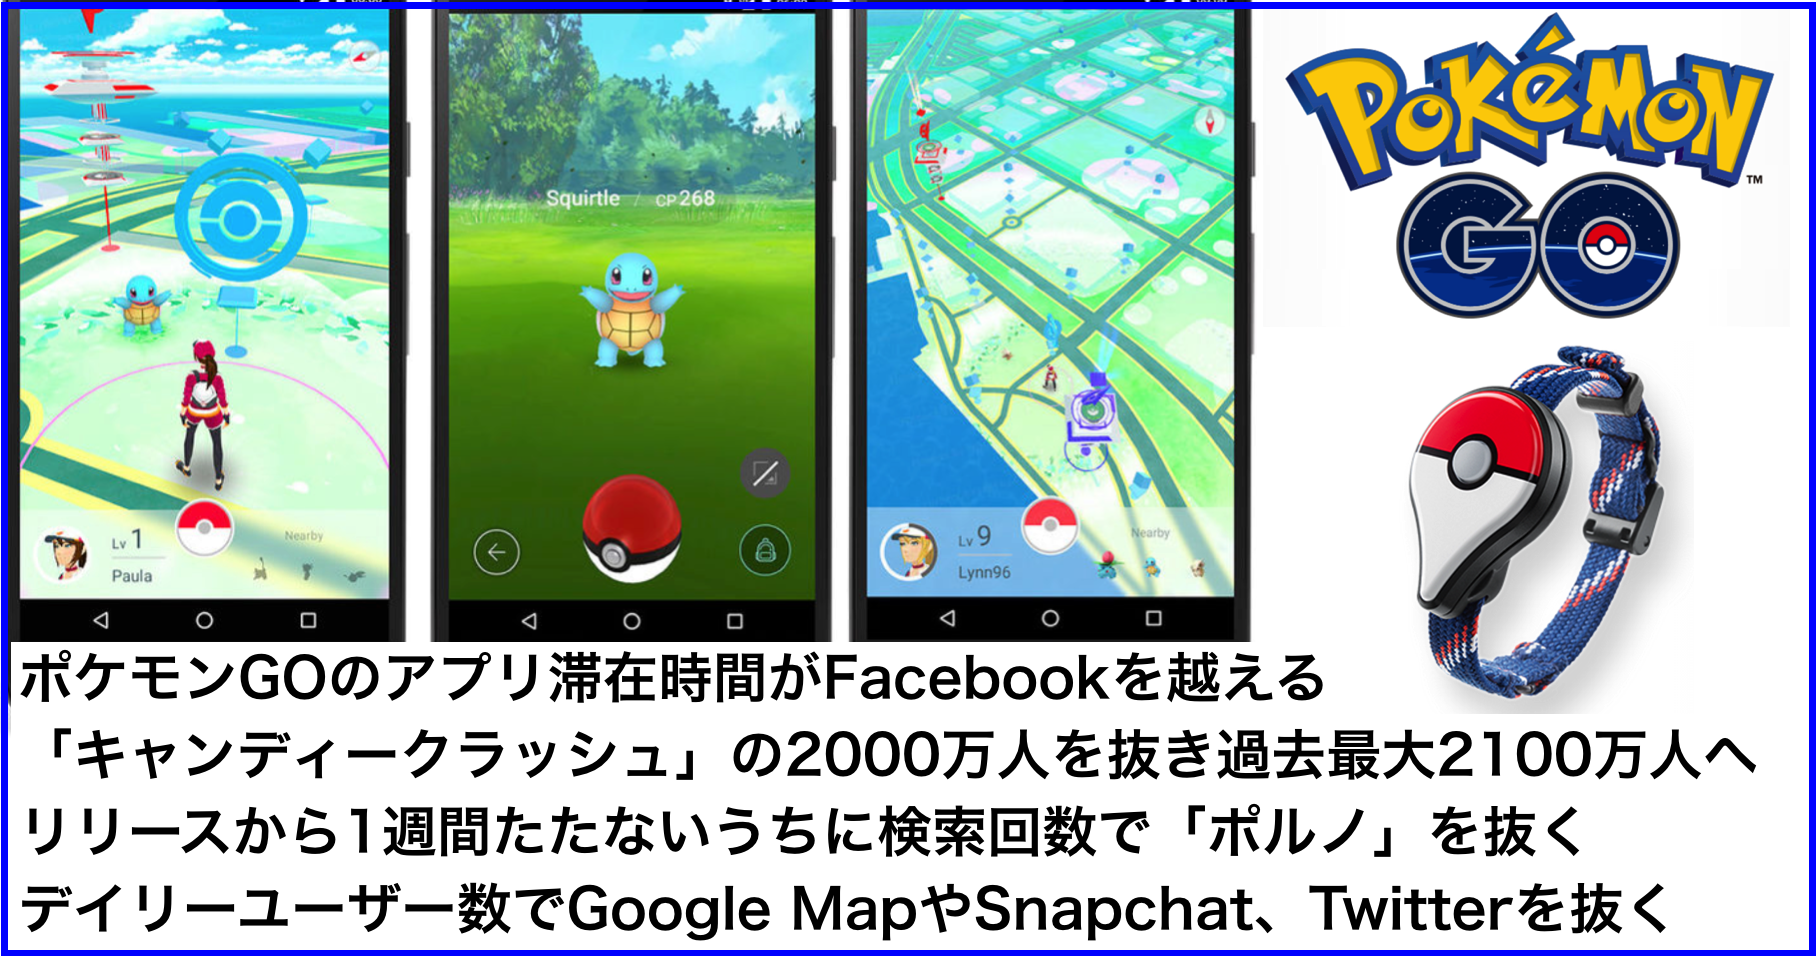 ポケモンGO(Pokemon GO)位置情報ARゲームアプリまとめ